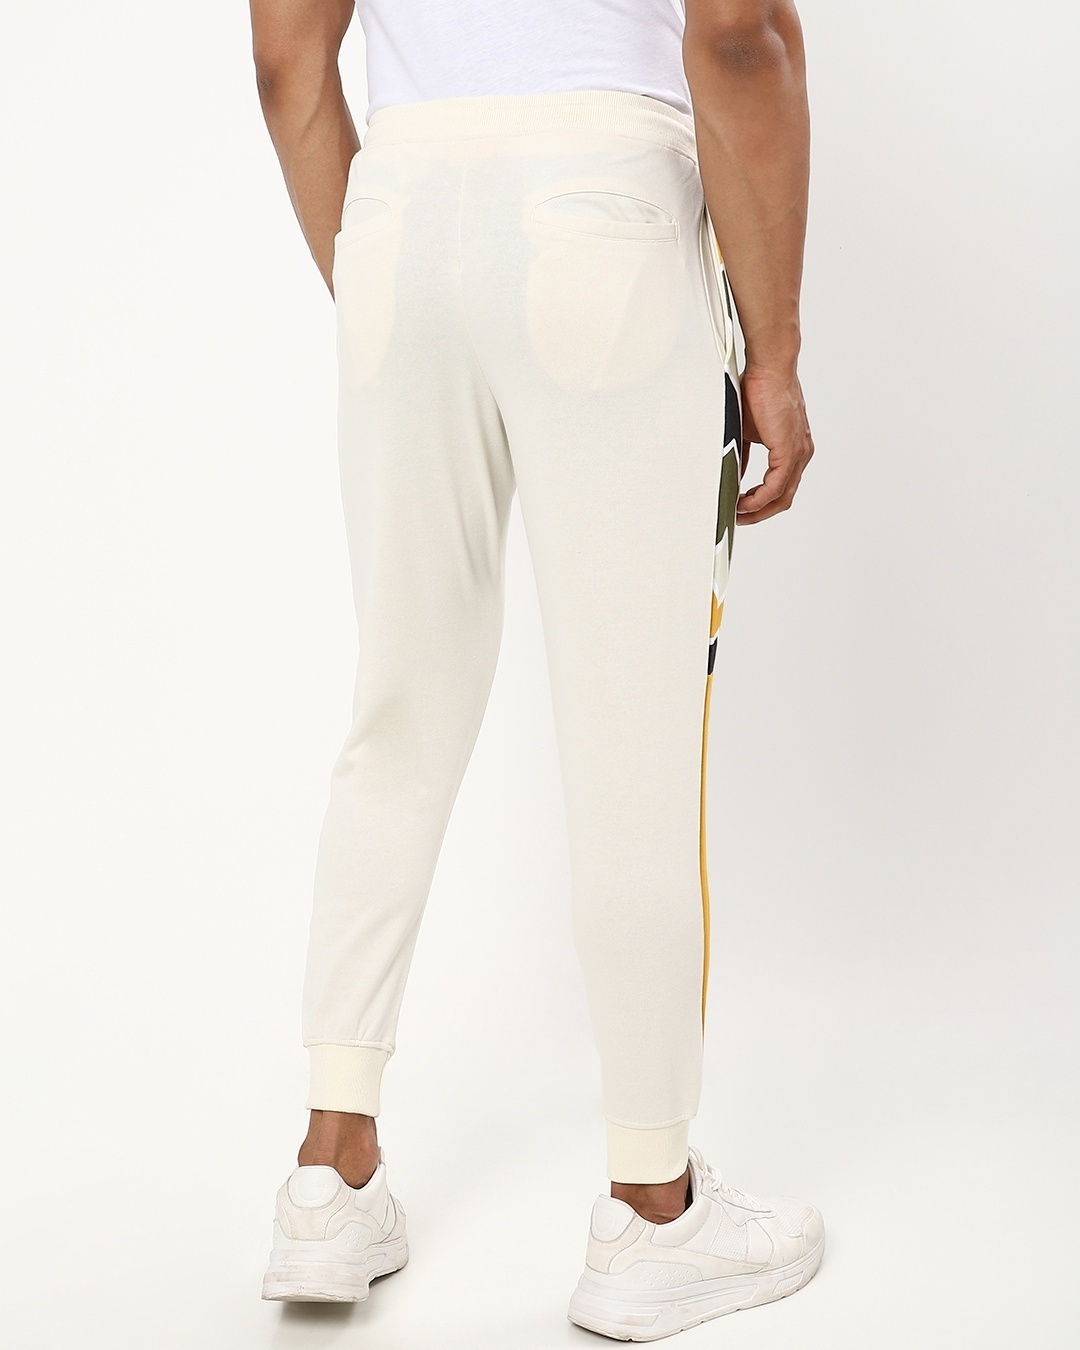 Shop Men's White & Yellow Colorblock Joggers-Design